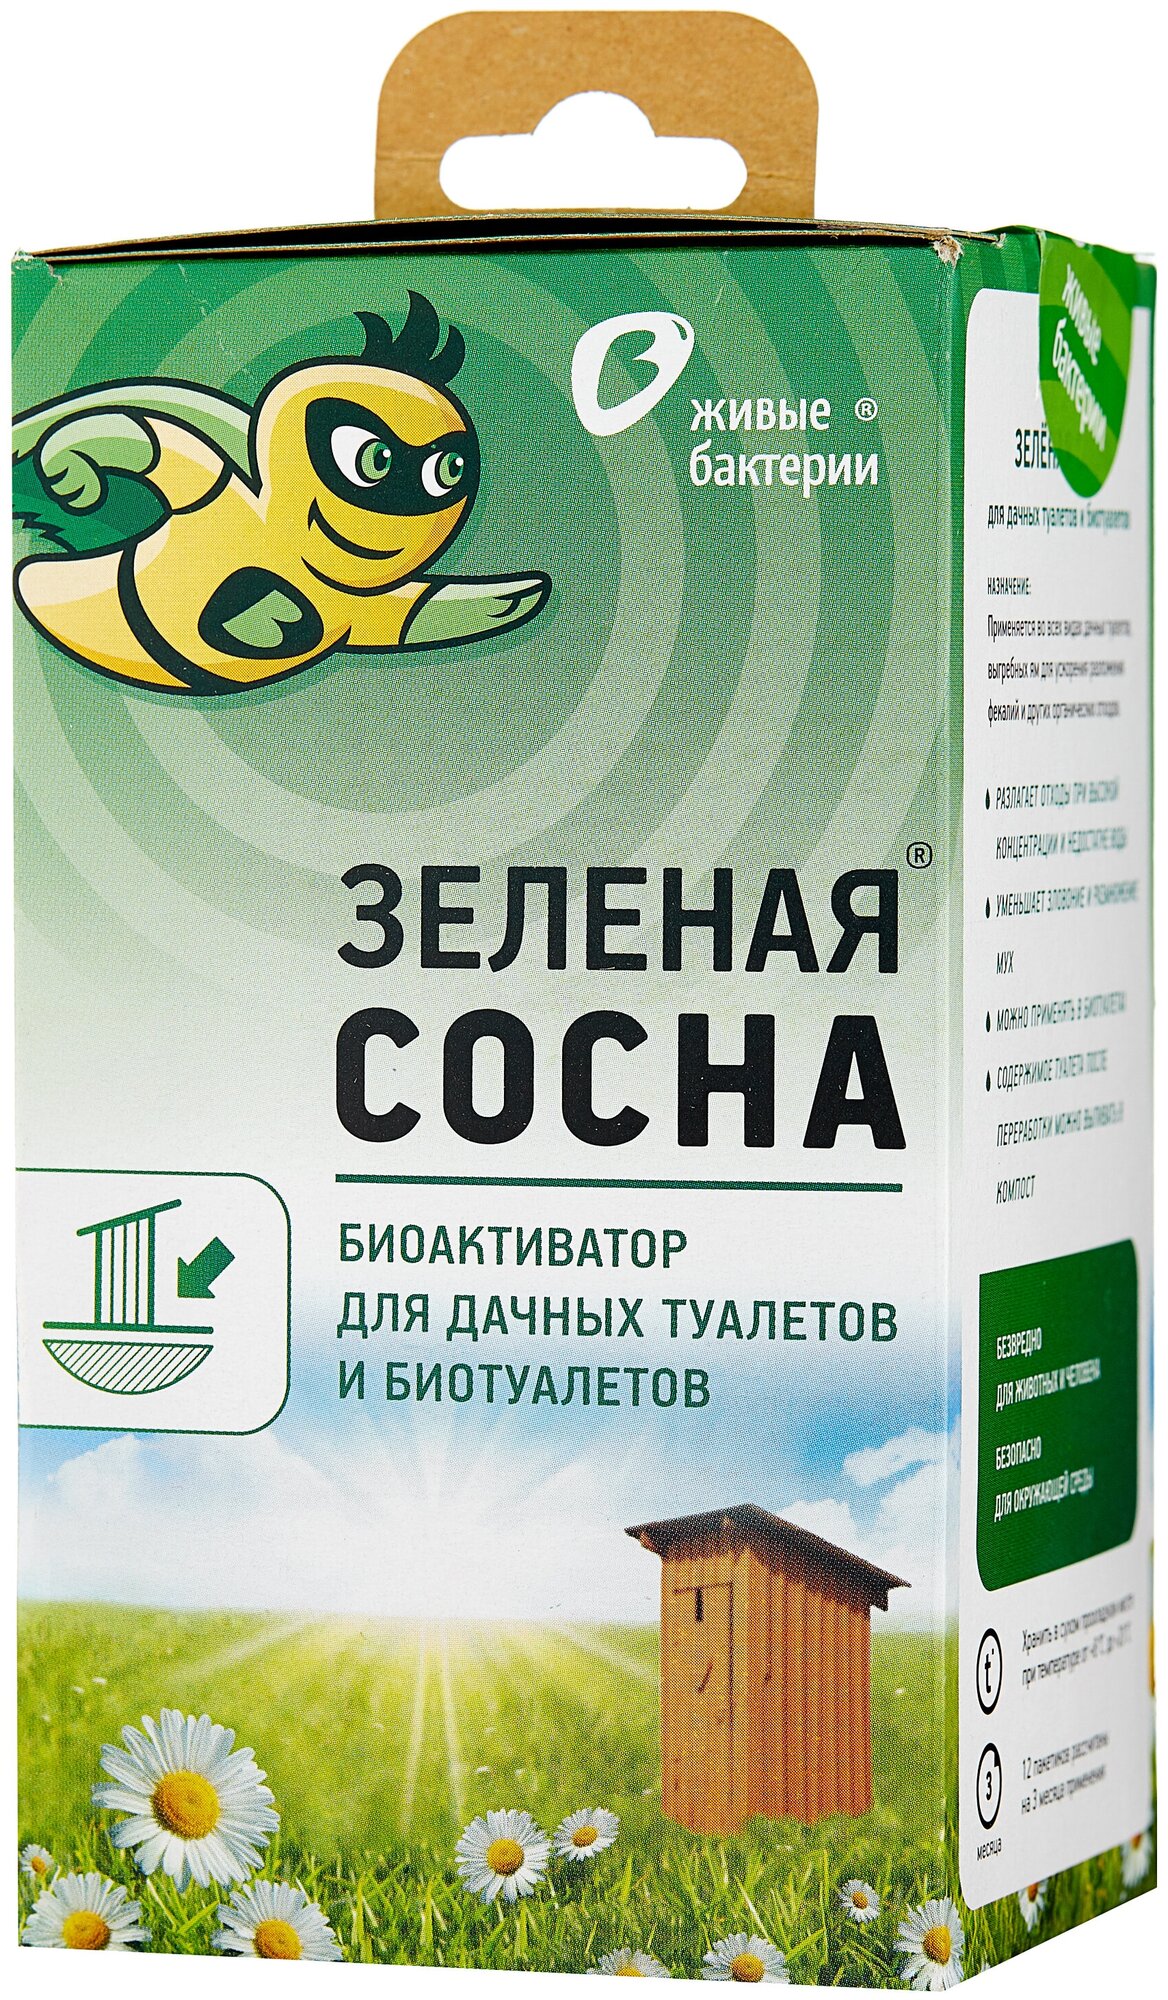 Биоактиватор для дачных туалетов Живые бактерии Зеленая сосна, 300 г (12 пакетов)